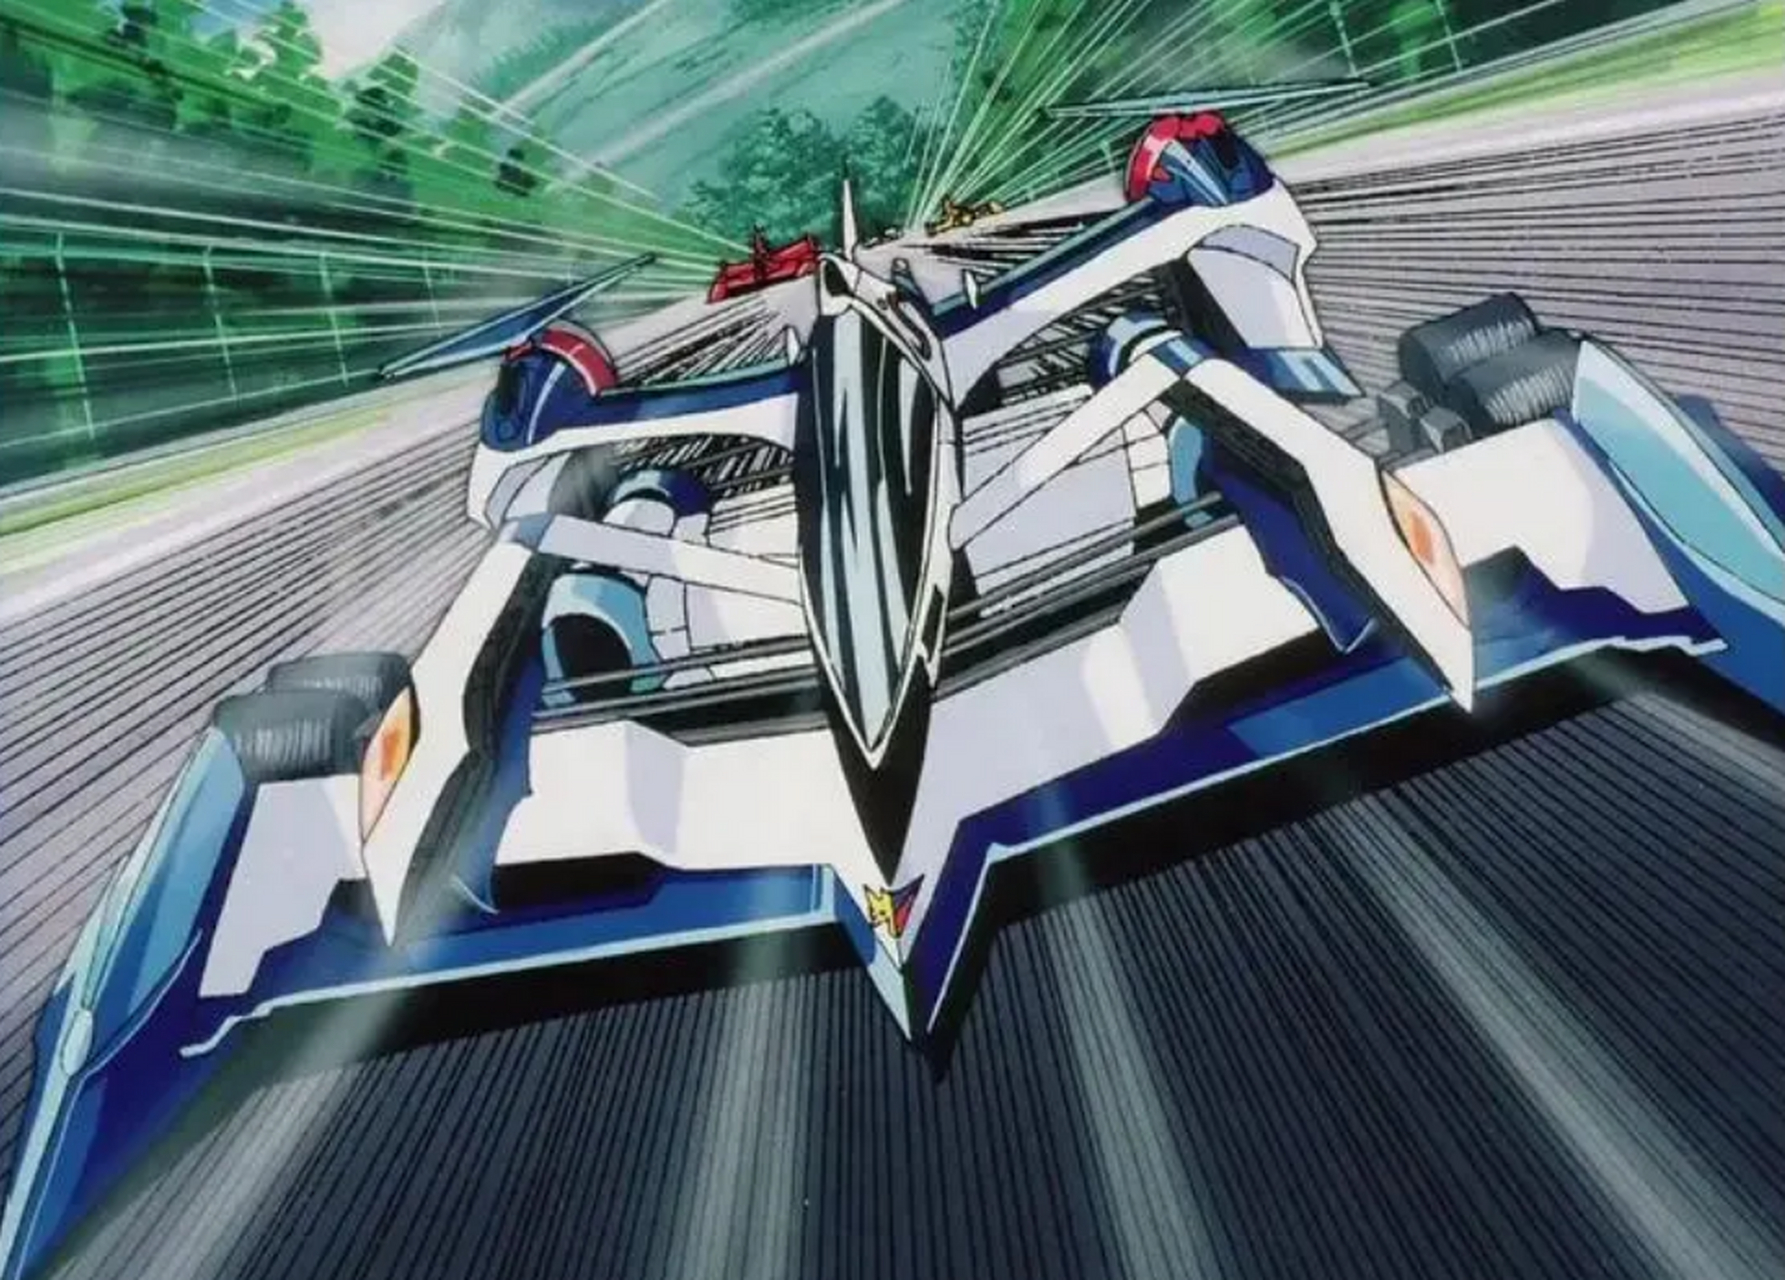 《高智能方程式赛车》是一部日本动画片,讲述14岁的少年风见隼人驾驶